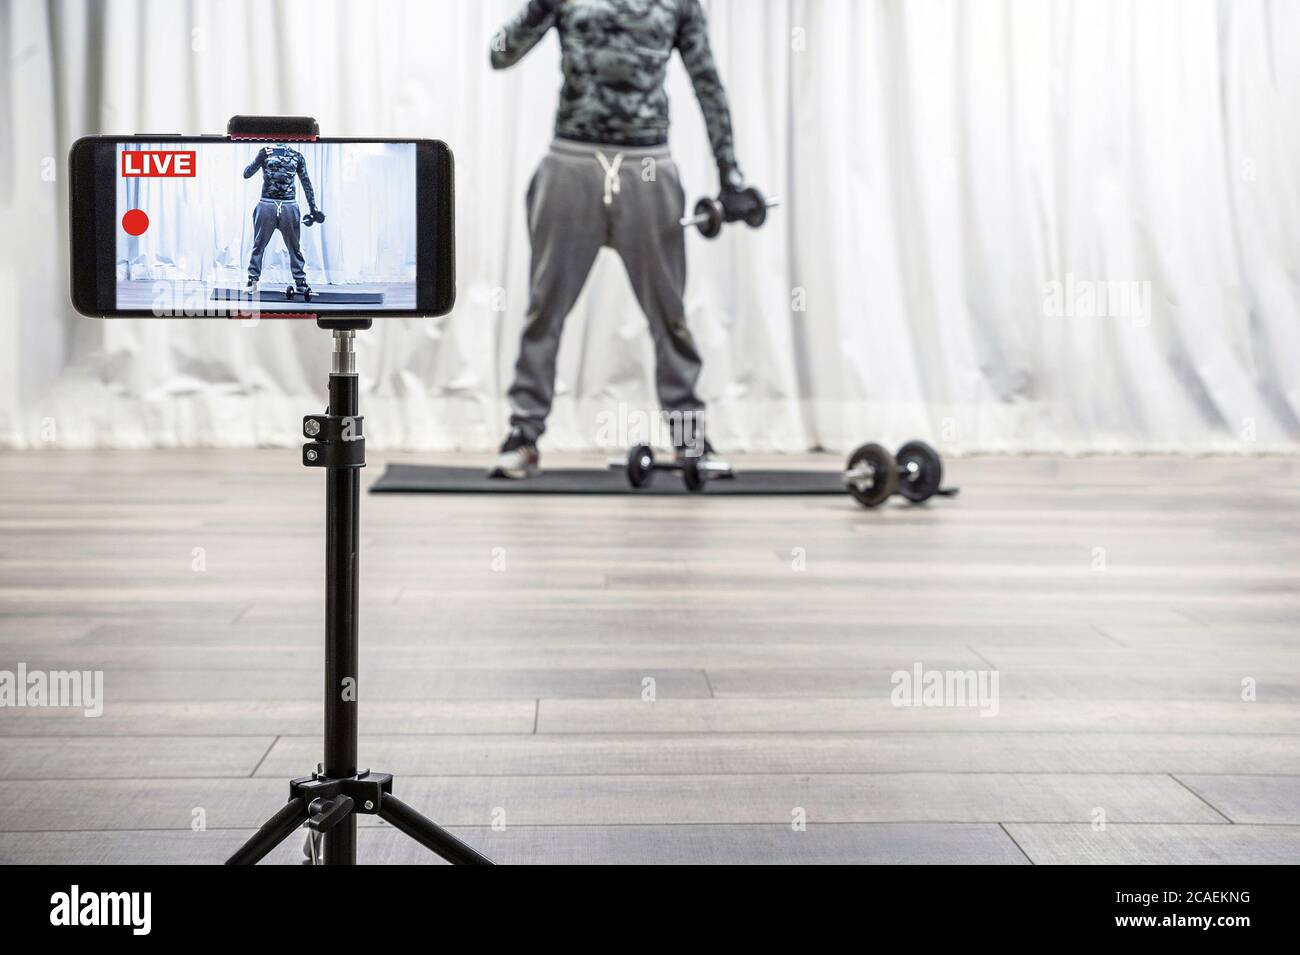 Uomo con gym dumbbell ed equilibrio. Esercizi di allenamento dal vivo su smartphone per seguaci sportivi sui social media. Coronavirus o quarantena Covid-19. Foto Stock